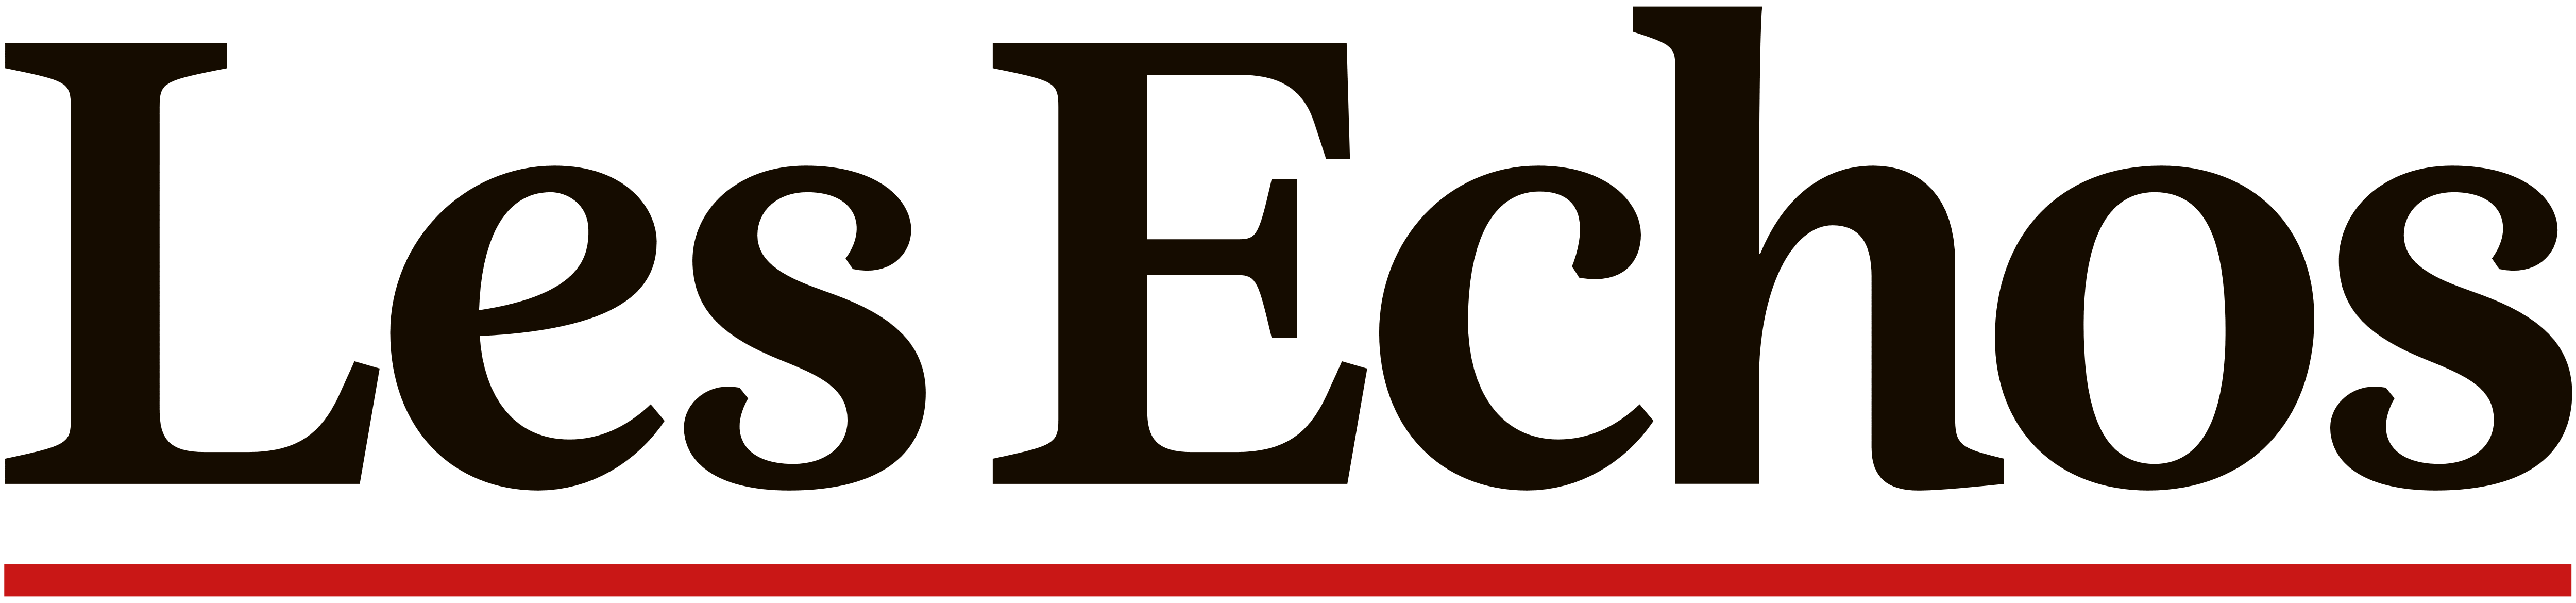 Les_Échos_logo_logotype